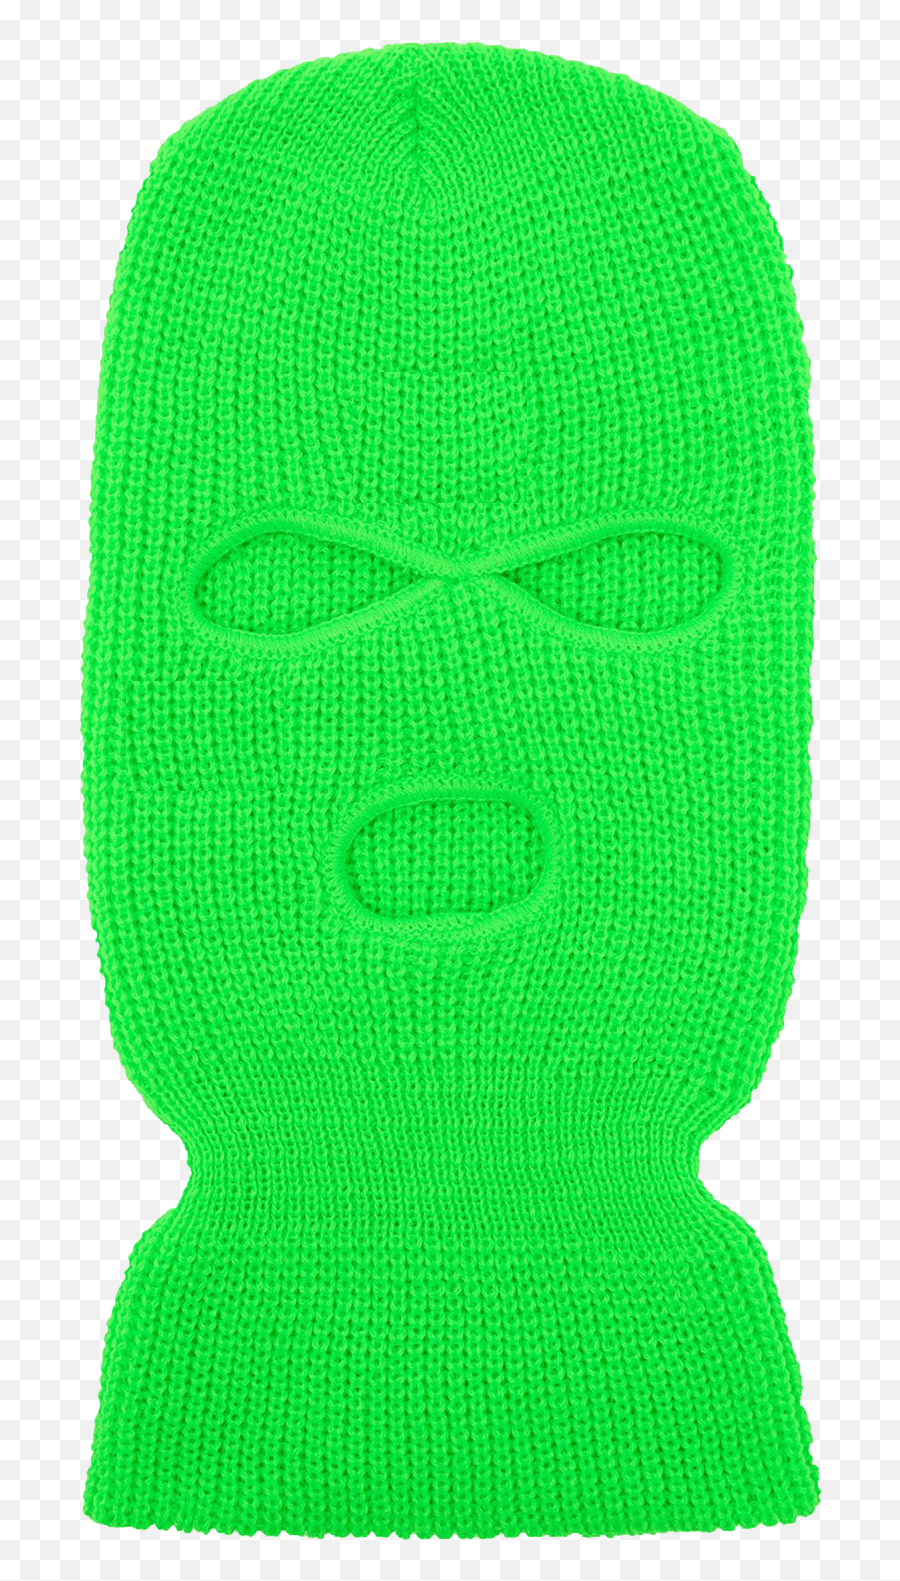 3 Hole Ski Mask Blank - For Adult Png,Ski Mask Transparent